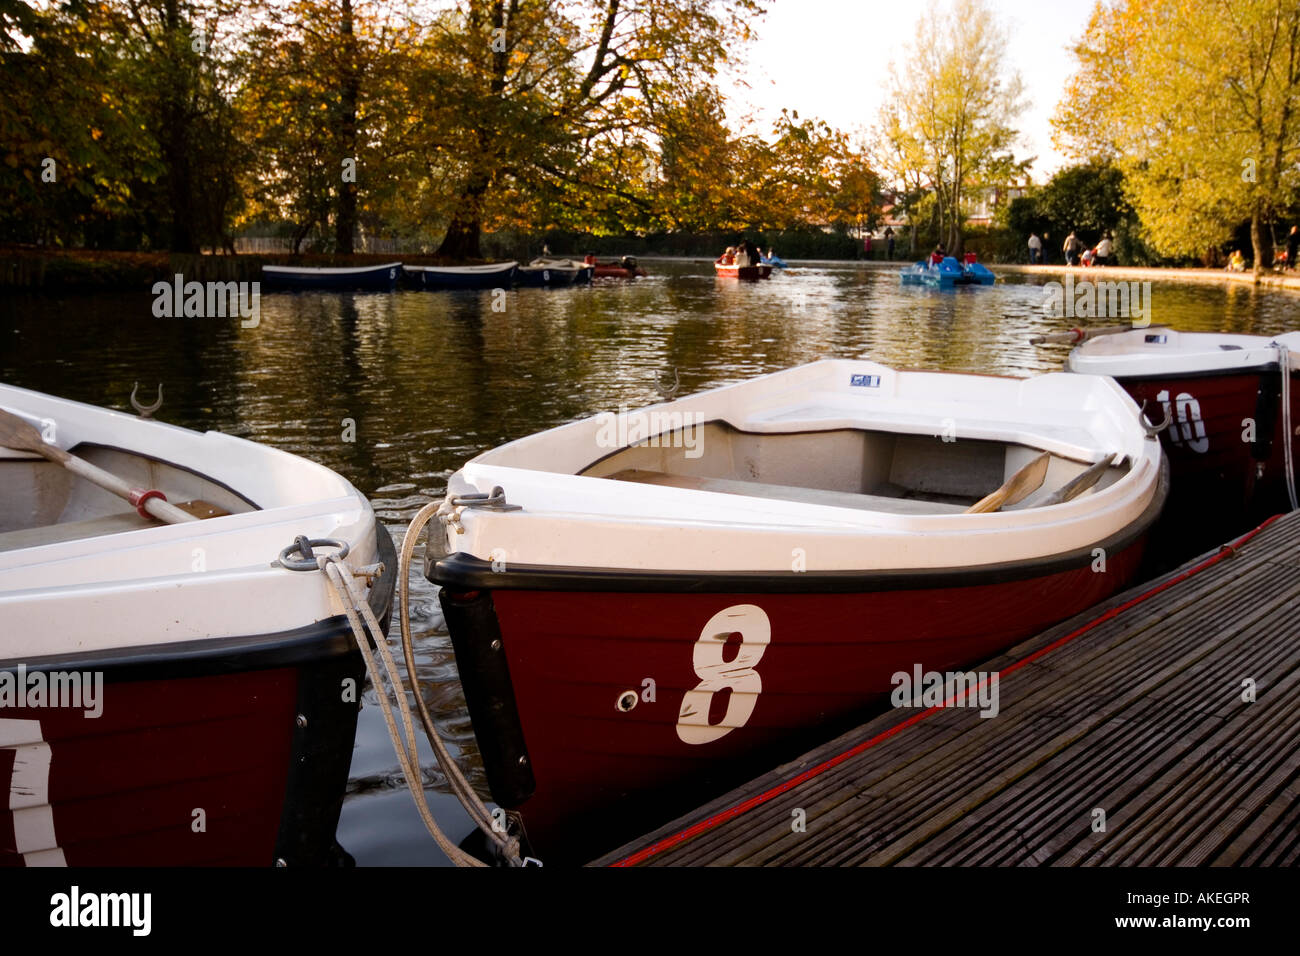 Boats moored on boating lake Alexandra Palace, London, England UK Stock Photo